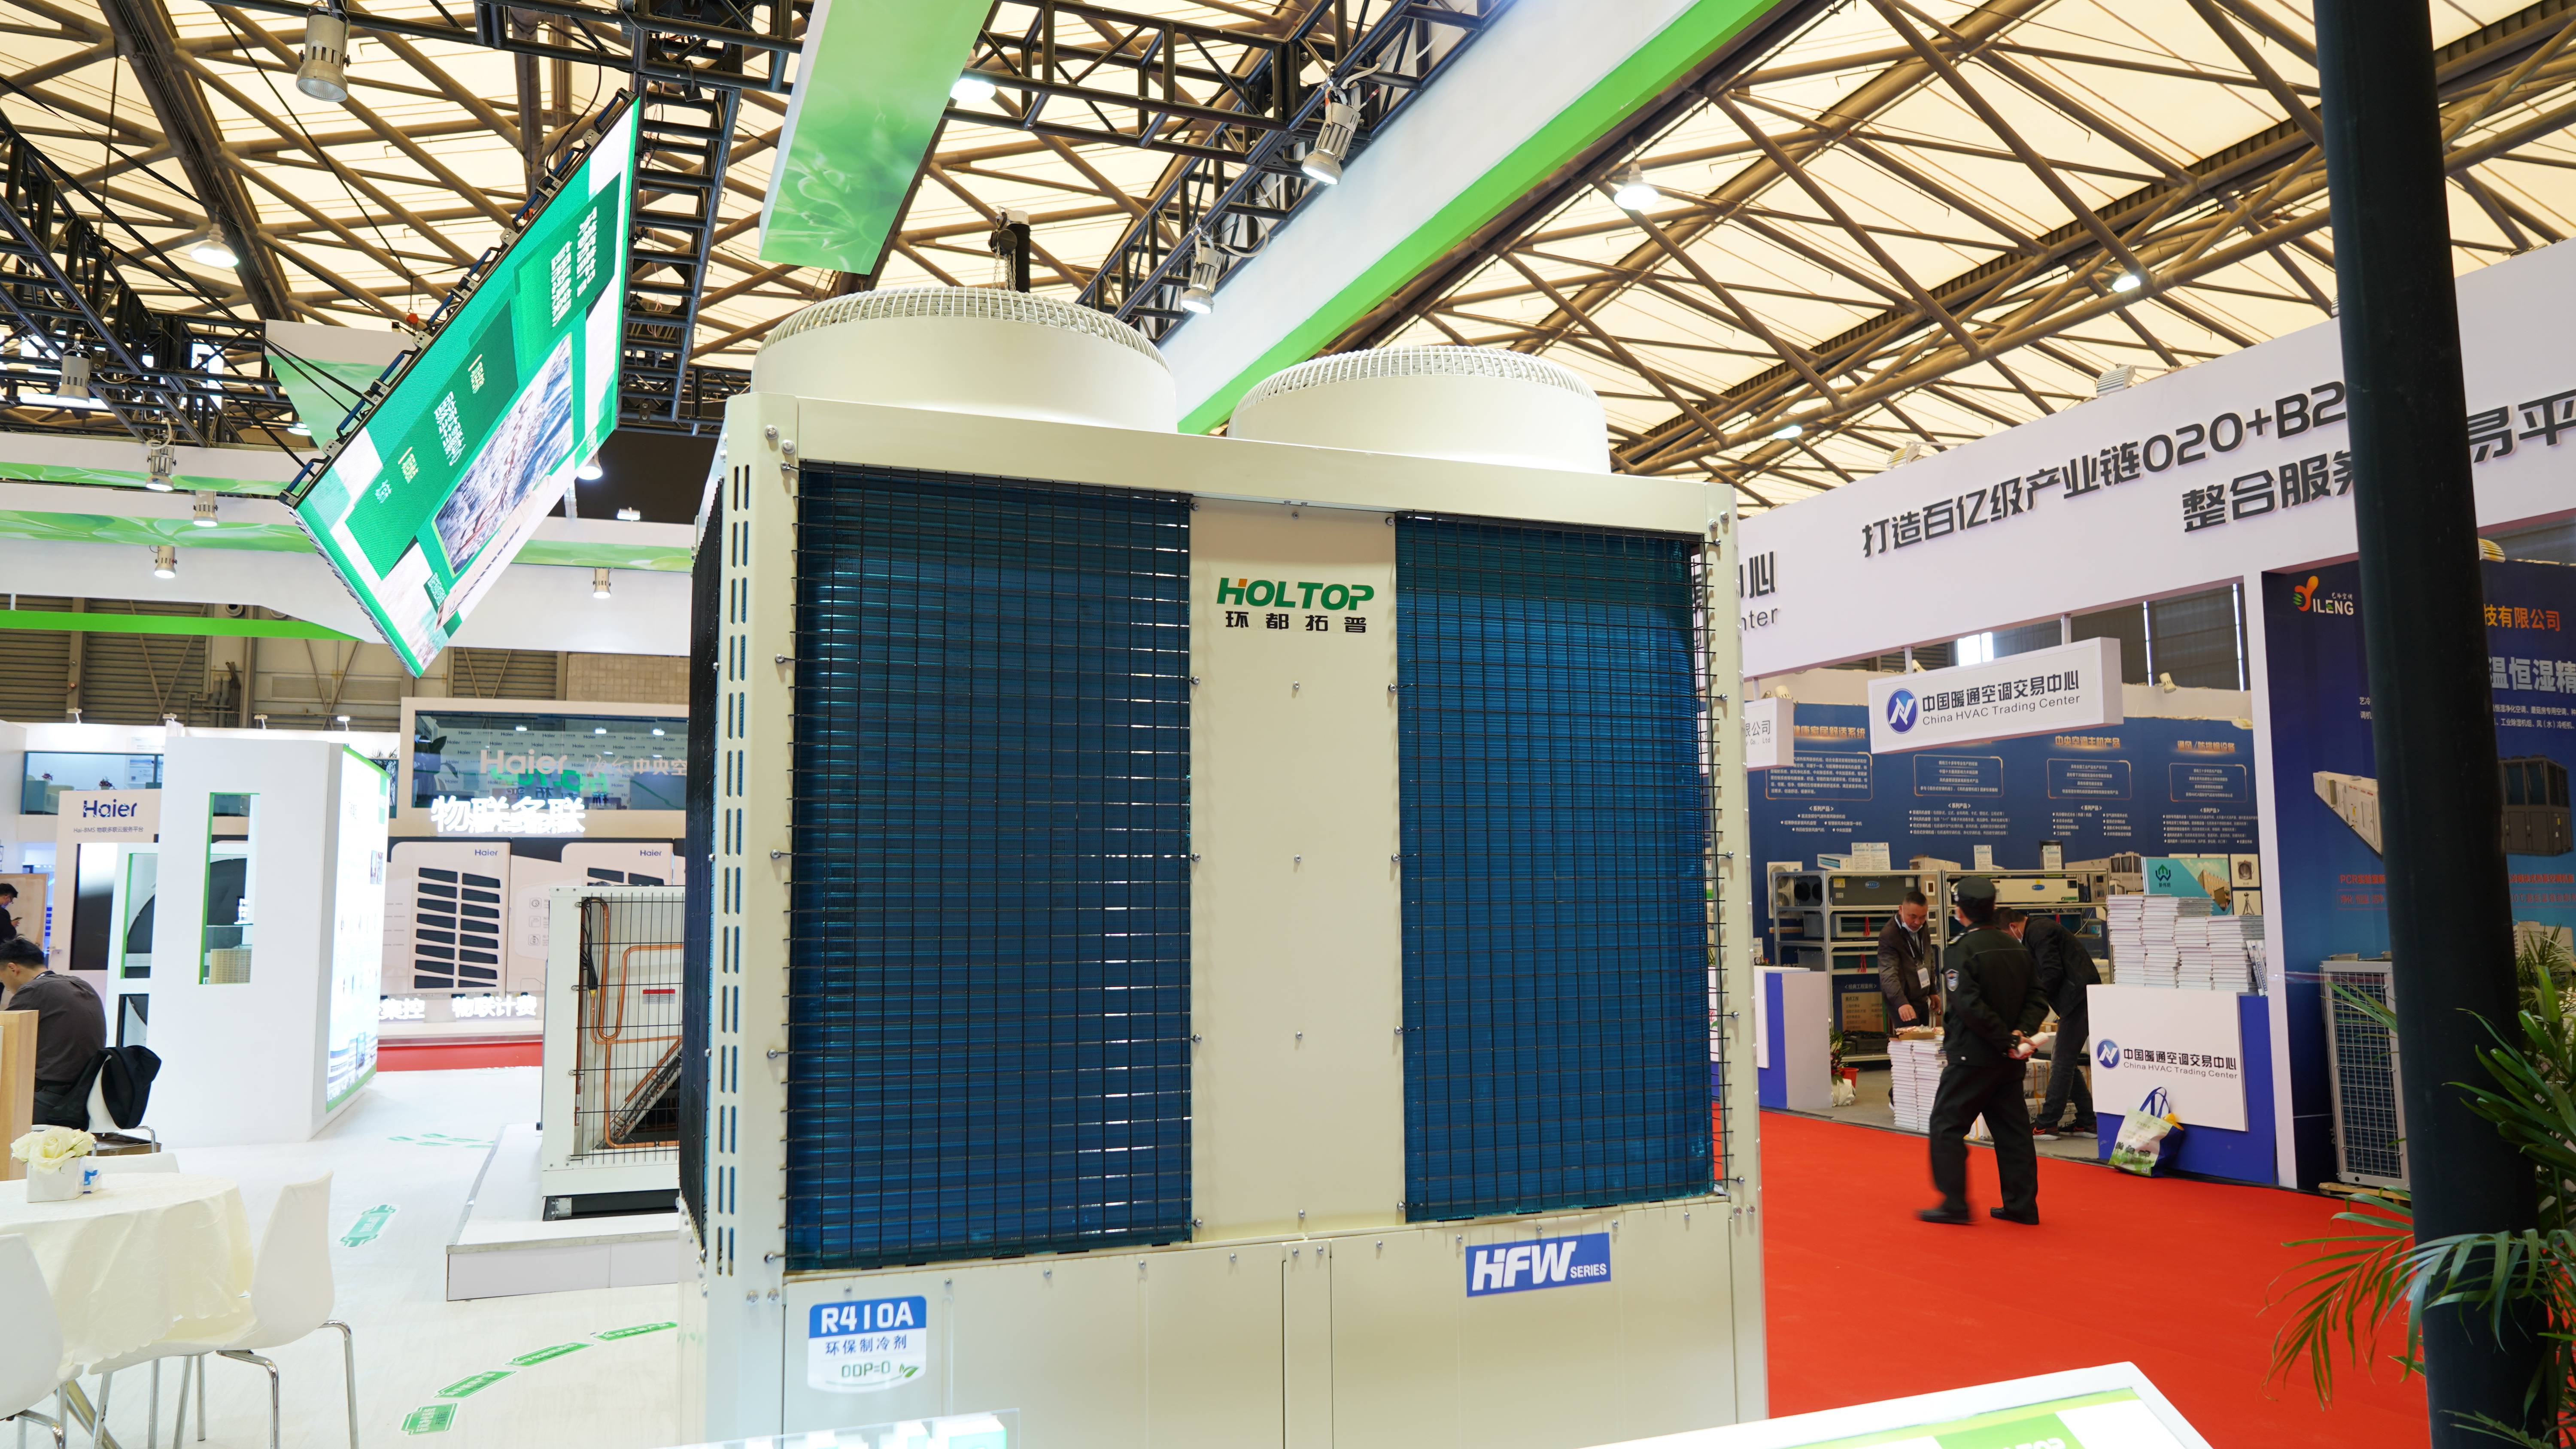 CR2021 Holtop bringt neues Produkt auf den Markt: modulare luftgekühlte Chiller-Wärmepumpe